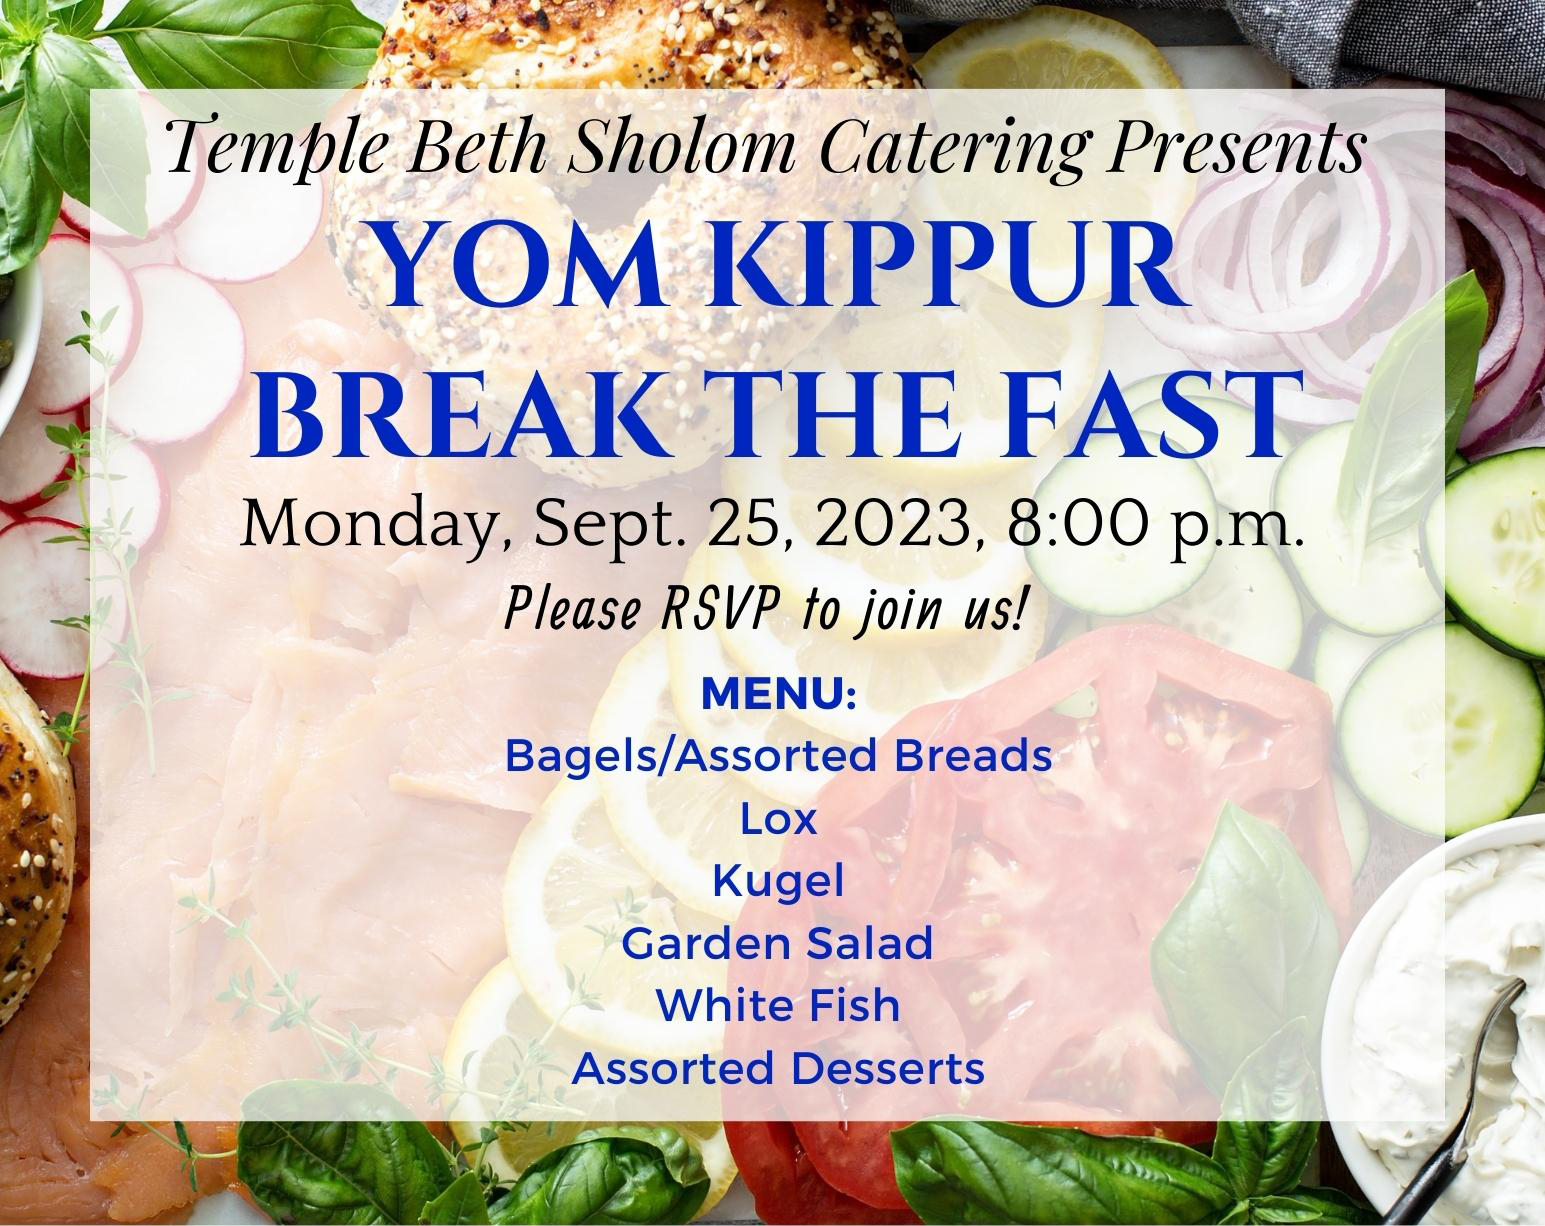 TBS' 2023 Yom Kippur Break The Fast